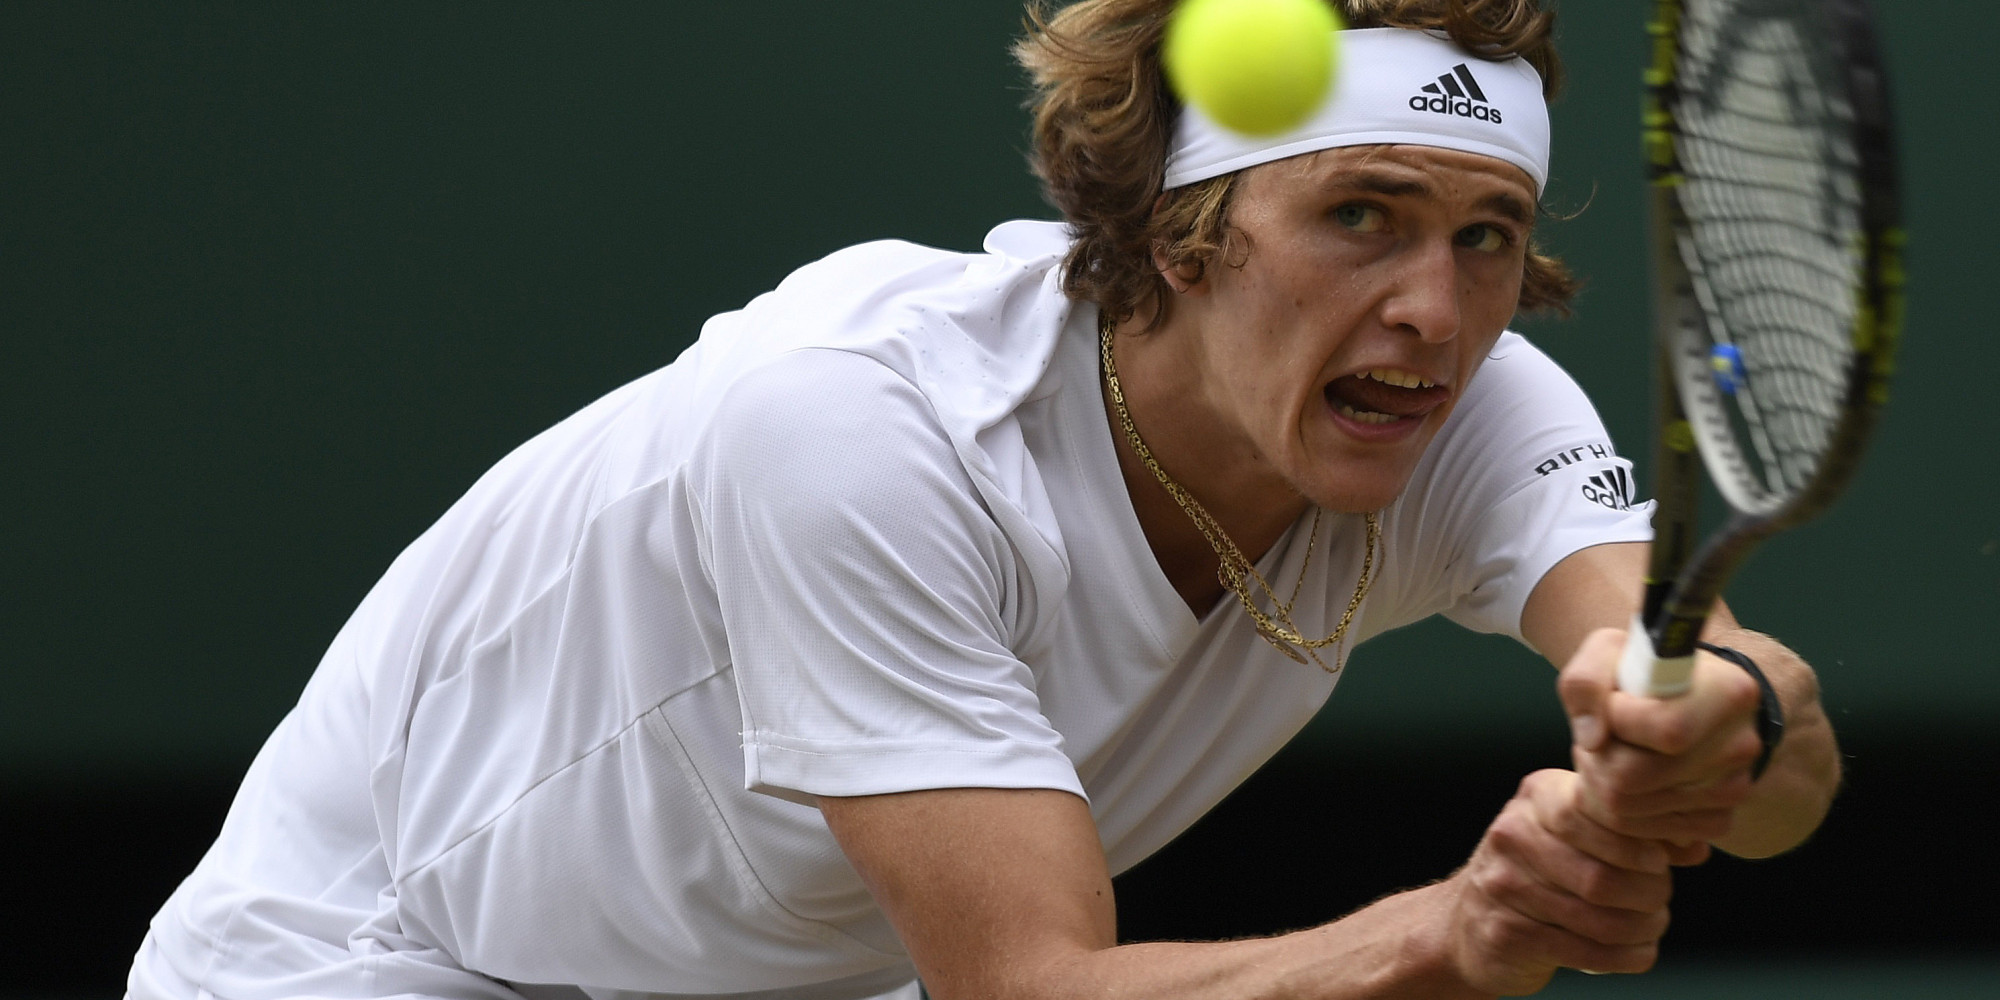 Wimbledon im Live-Stream: Donskoy vs. Zverev online sehen, so geht's - Huffington Post Deutschland